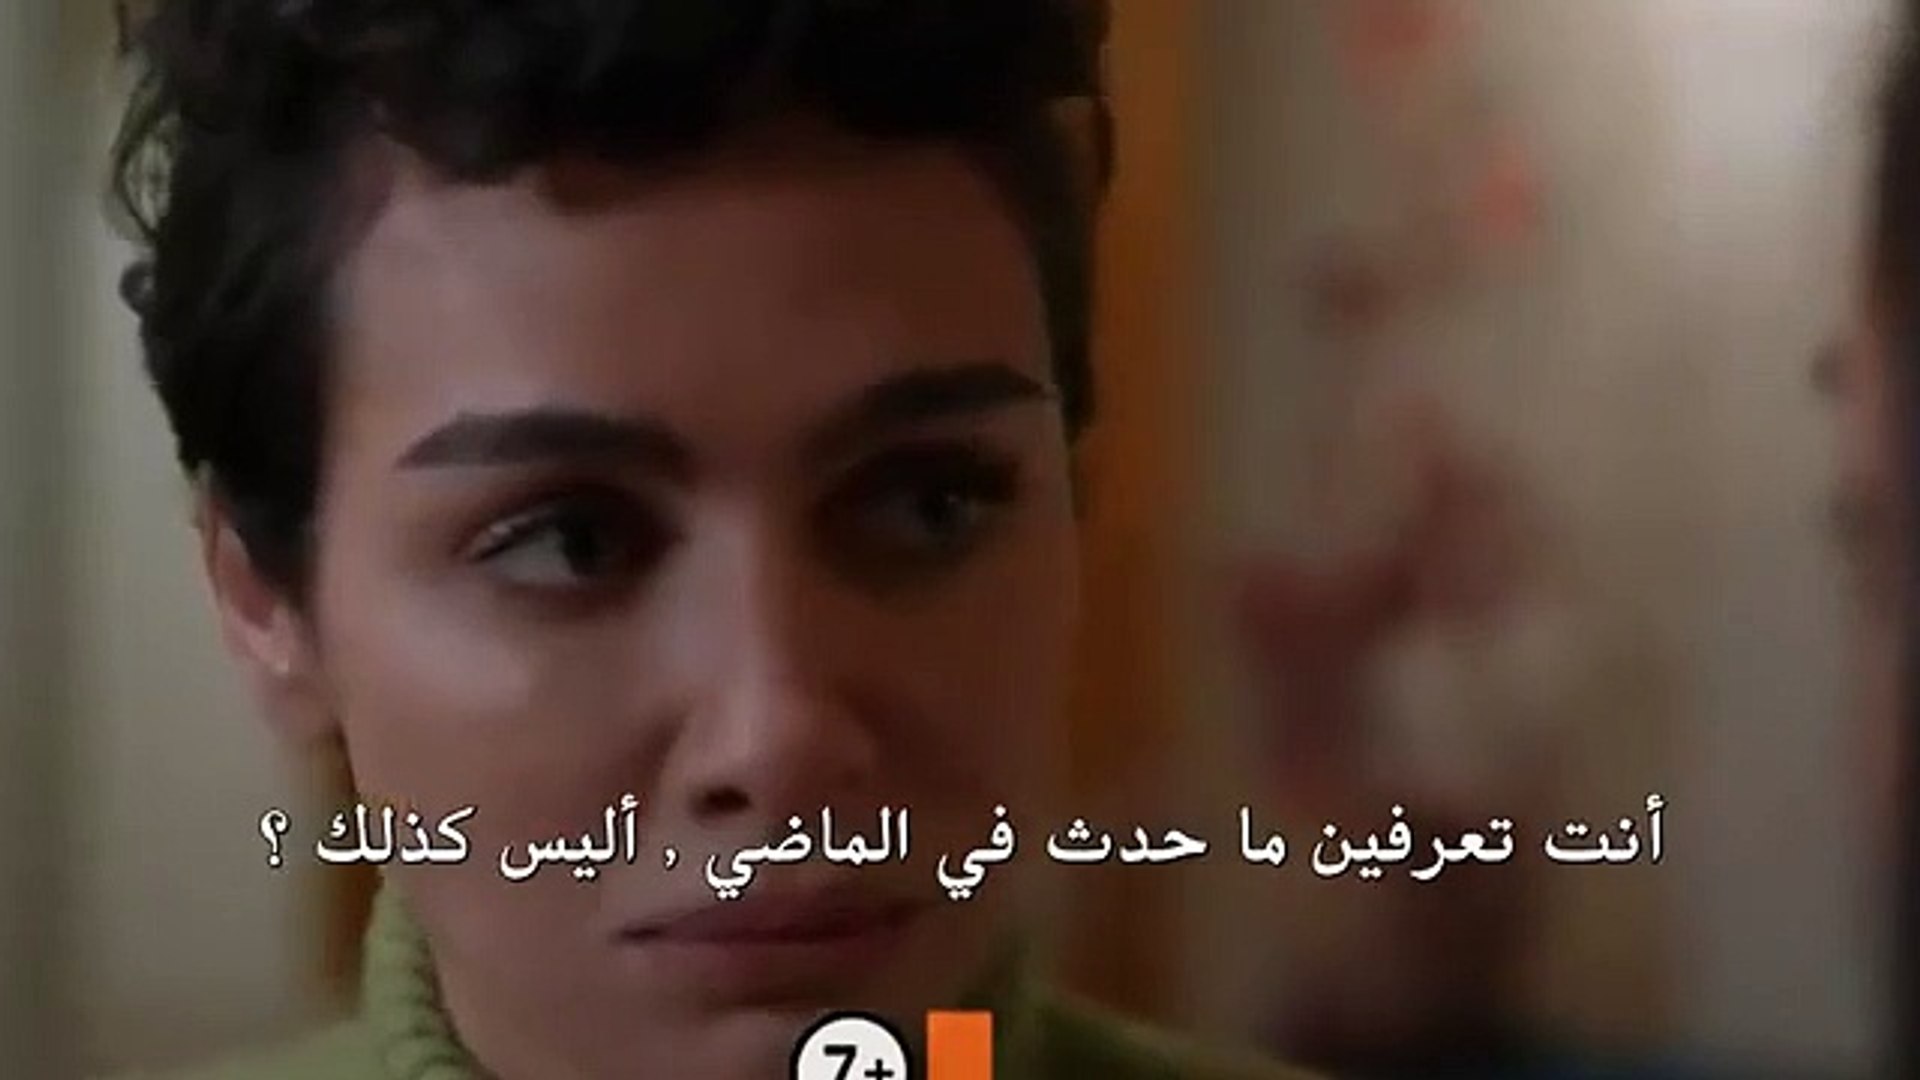 مسلسل لا تبكي يا امي الحلقة 10 مترجمة للعربية اعلان 1 فيديو Dailymotion